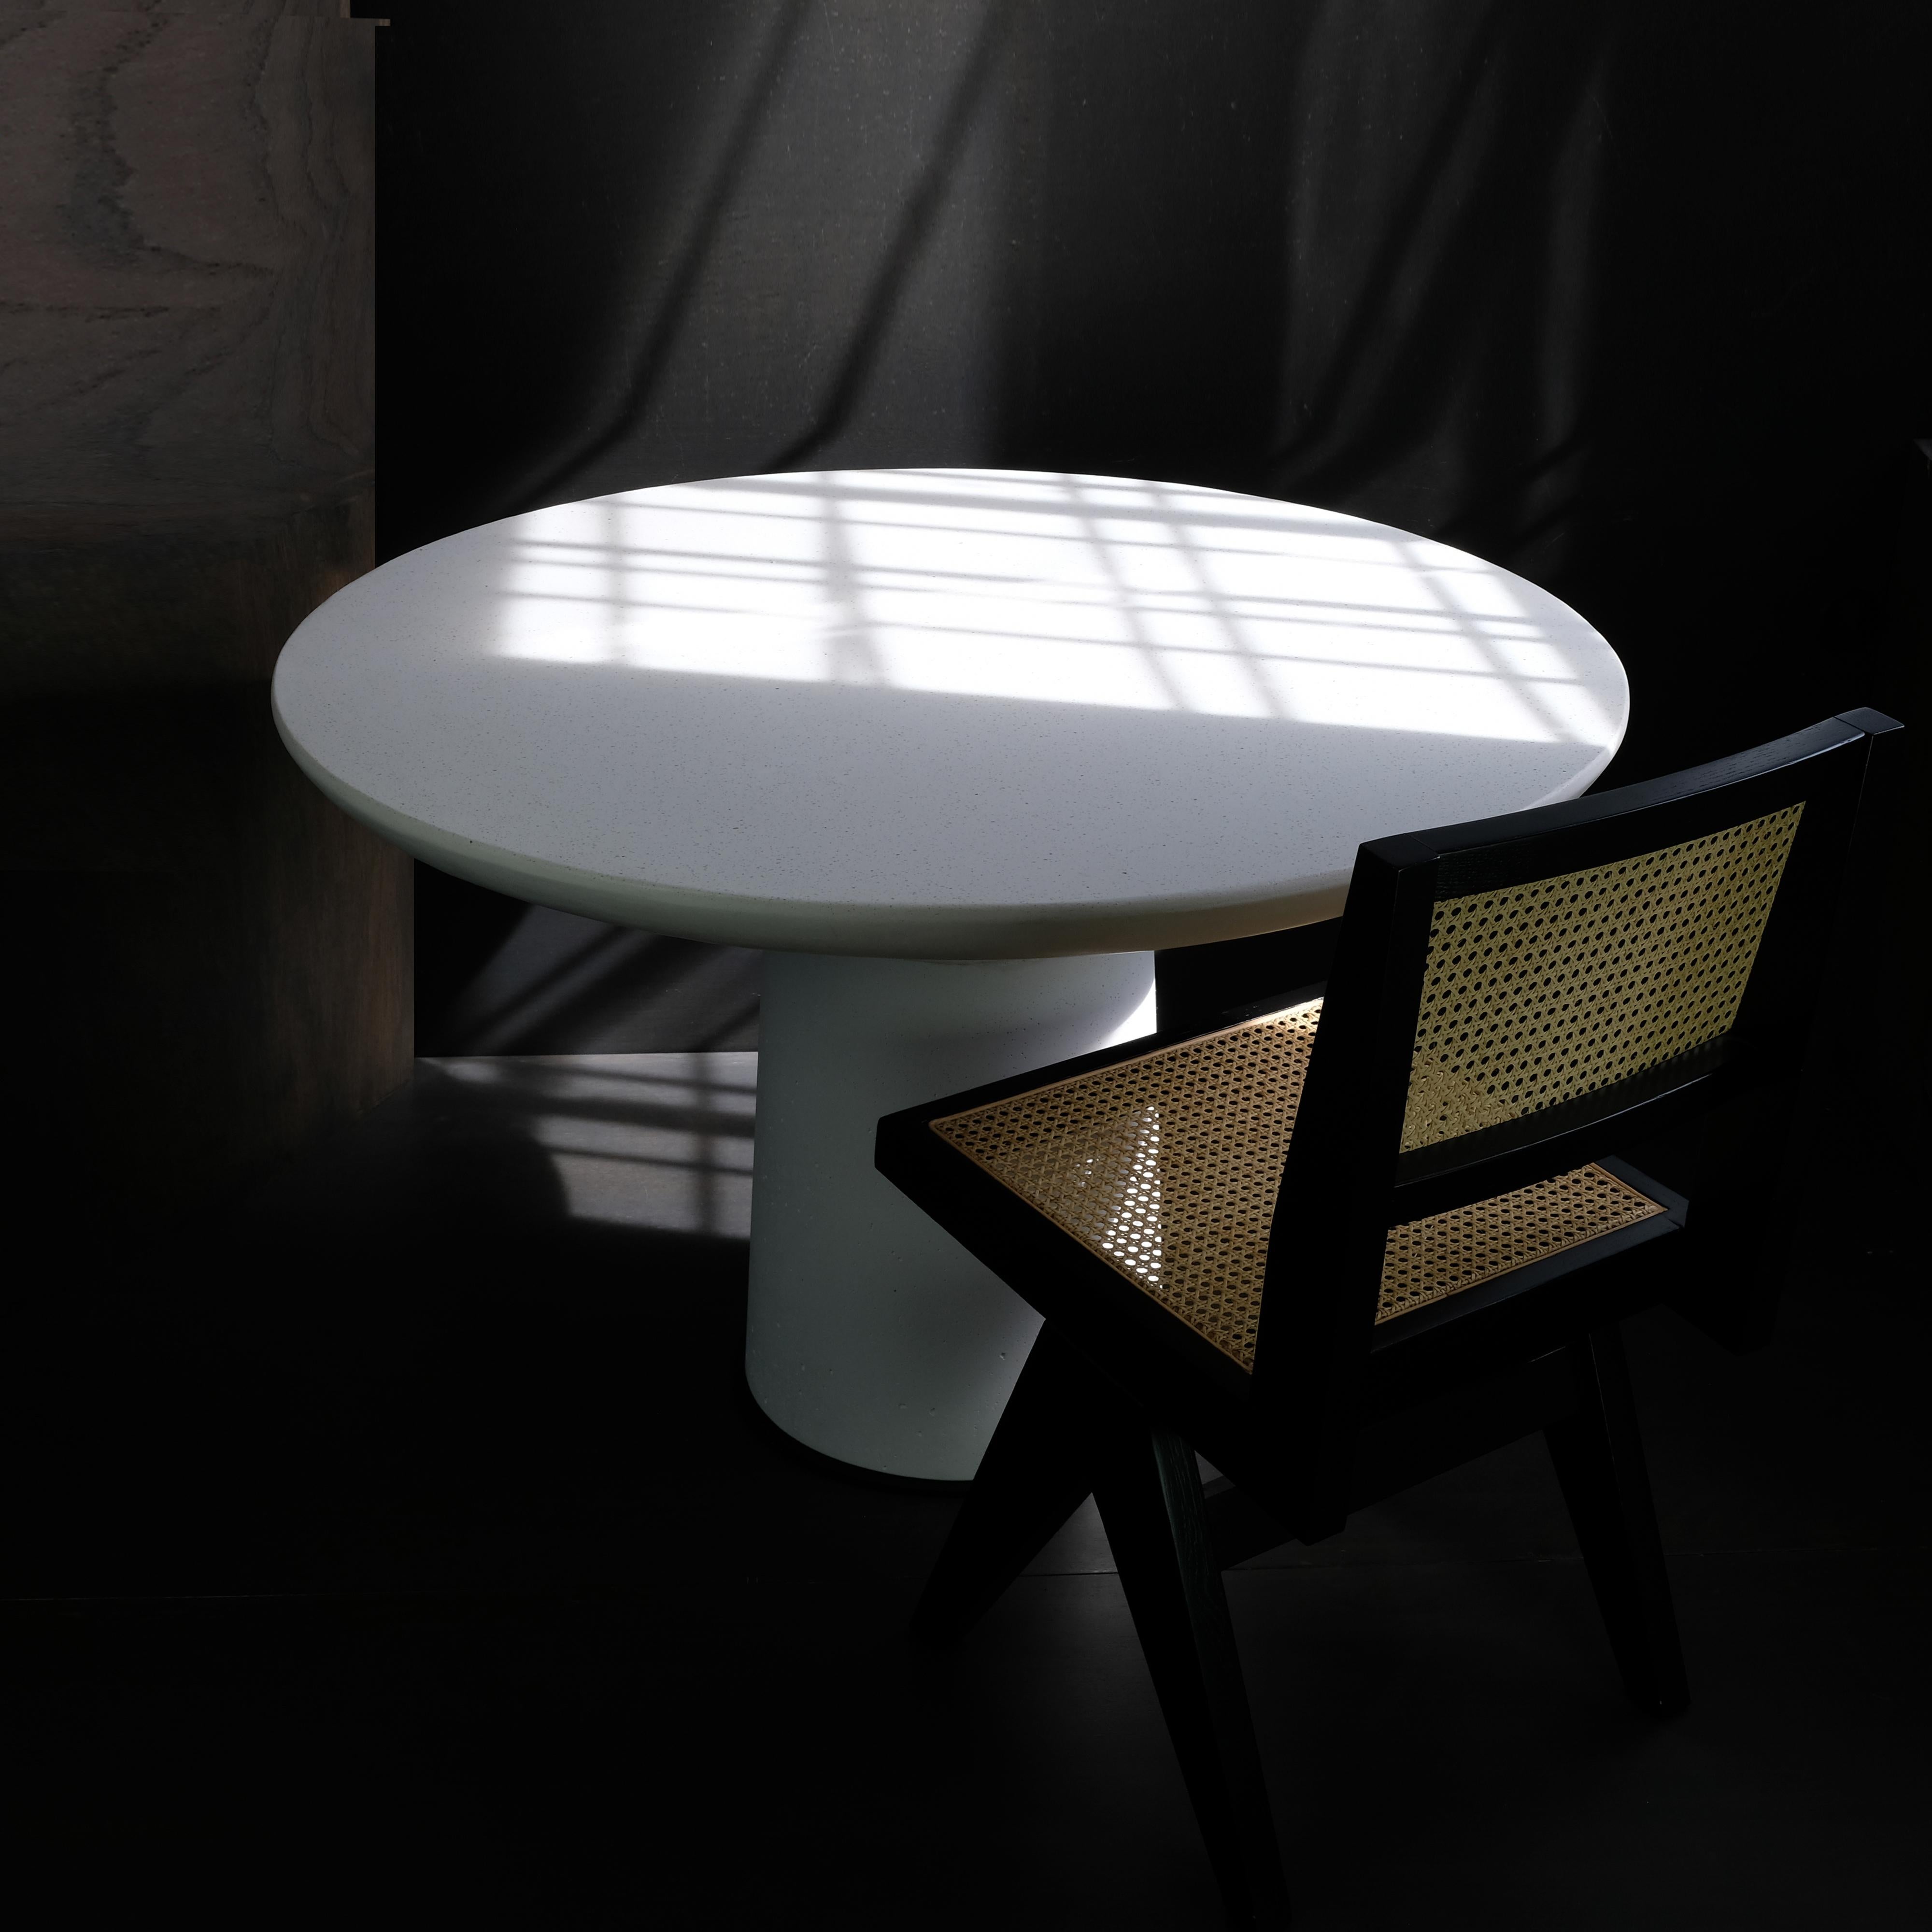 Der POISE DINING TABLE gehört zu unserer Kollektion von Objekten aus einem einzigen Material. Hinter seinen zeitlosen und klassischen Proportionen, seinem klaren und skulpturalen Design verbirgt sich wahre Beständigkeit.

Entwurf: Alentes Atelier